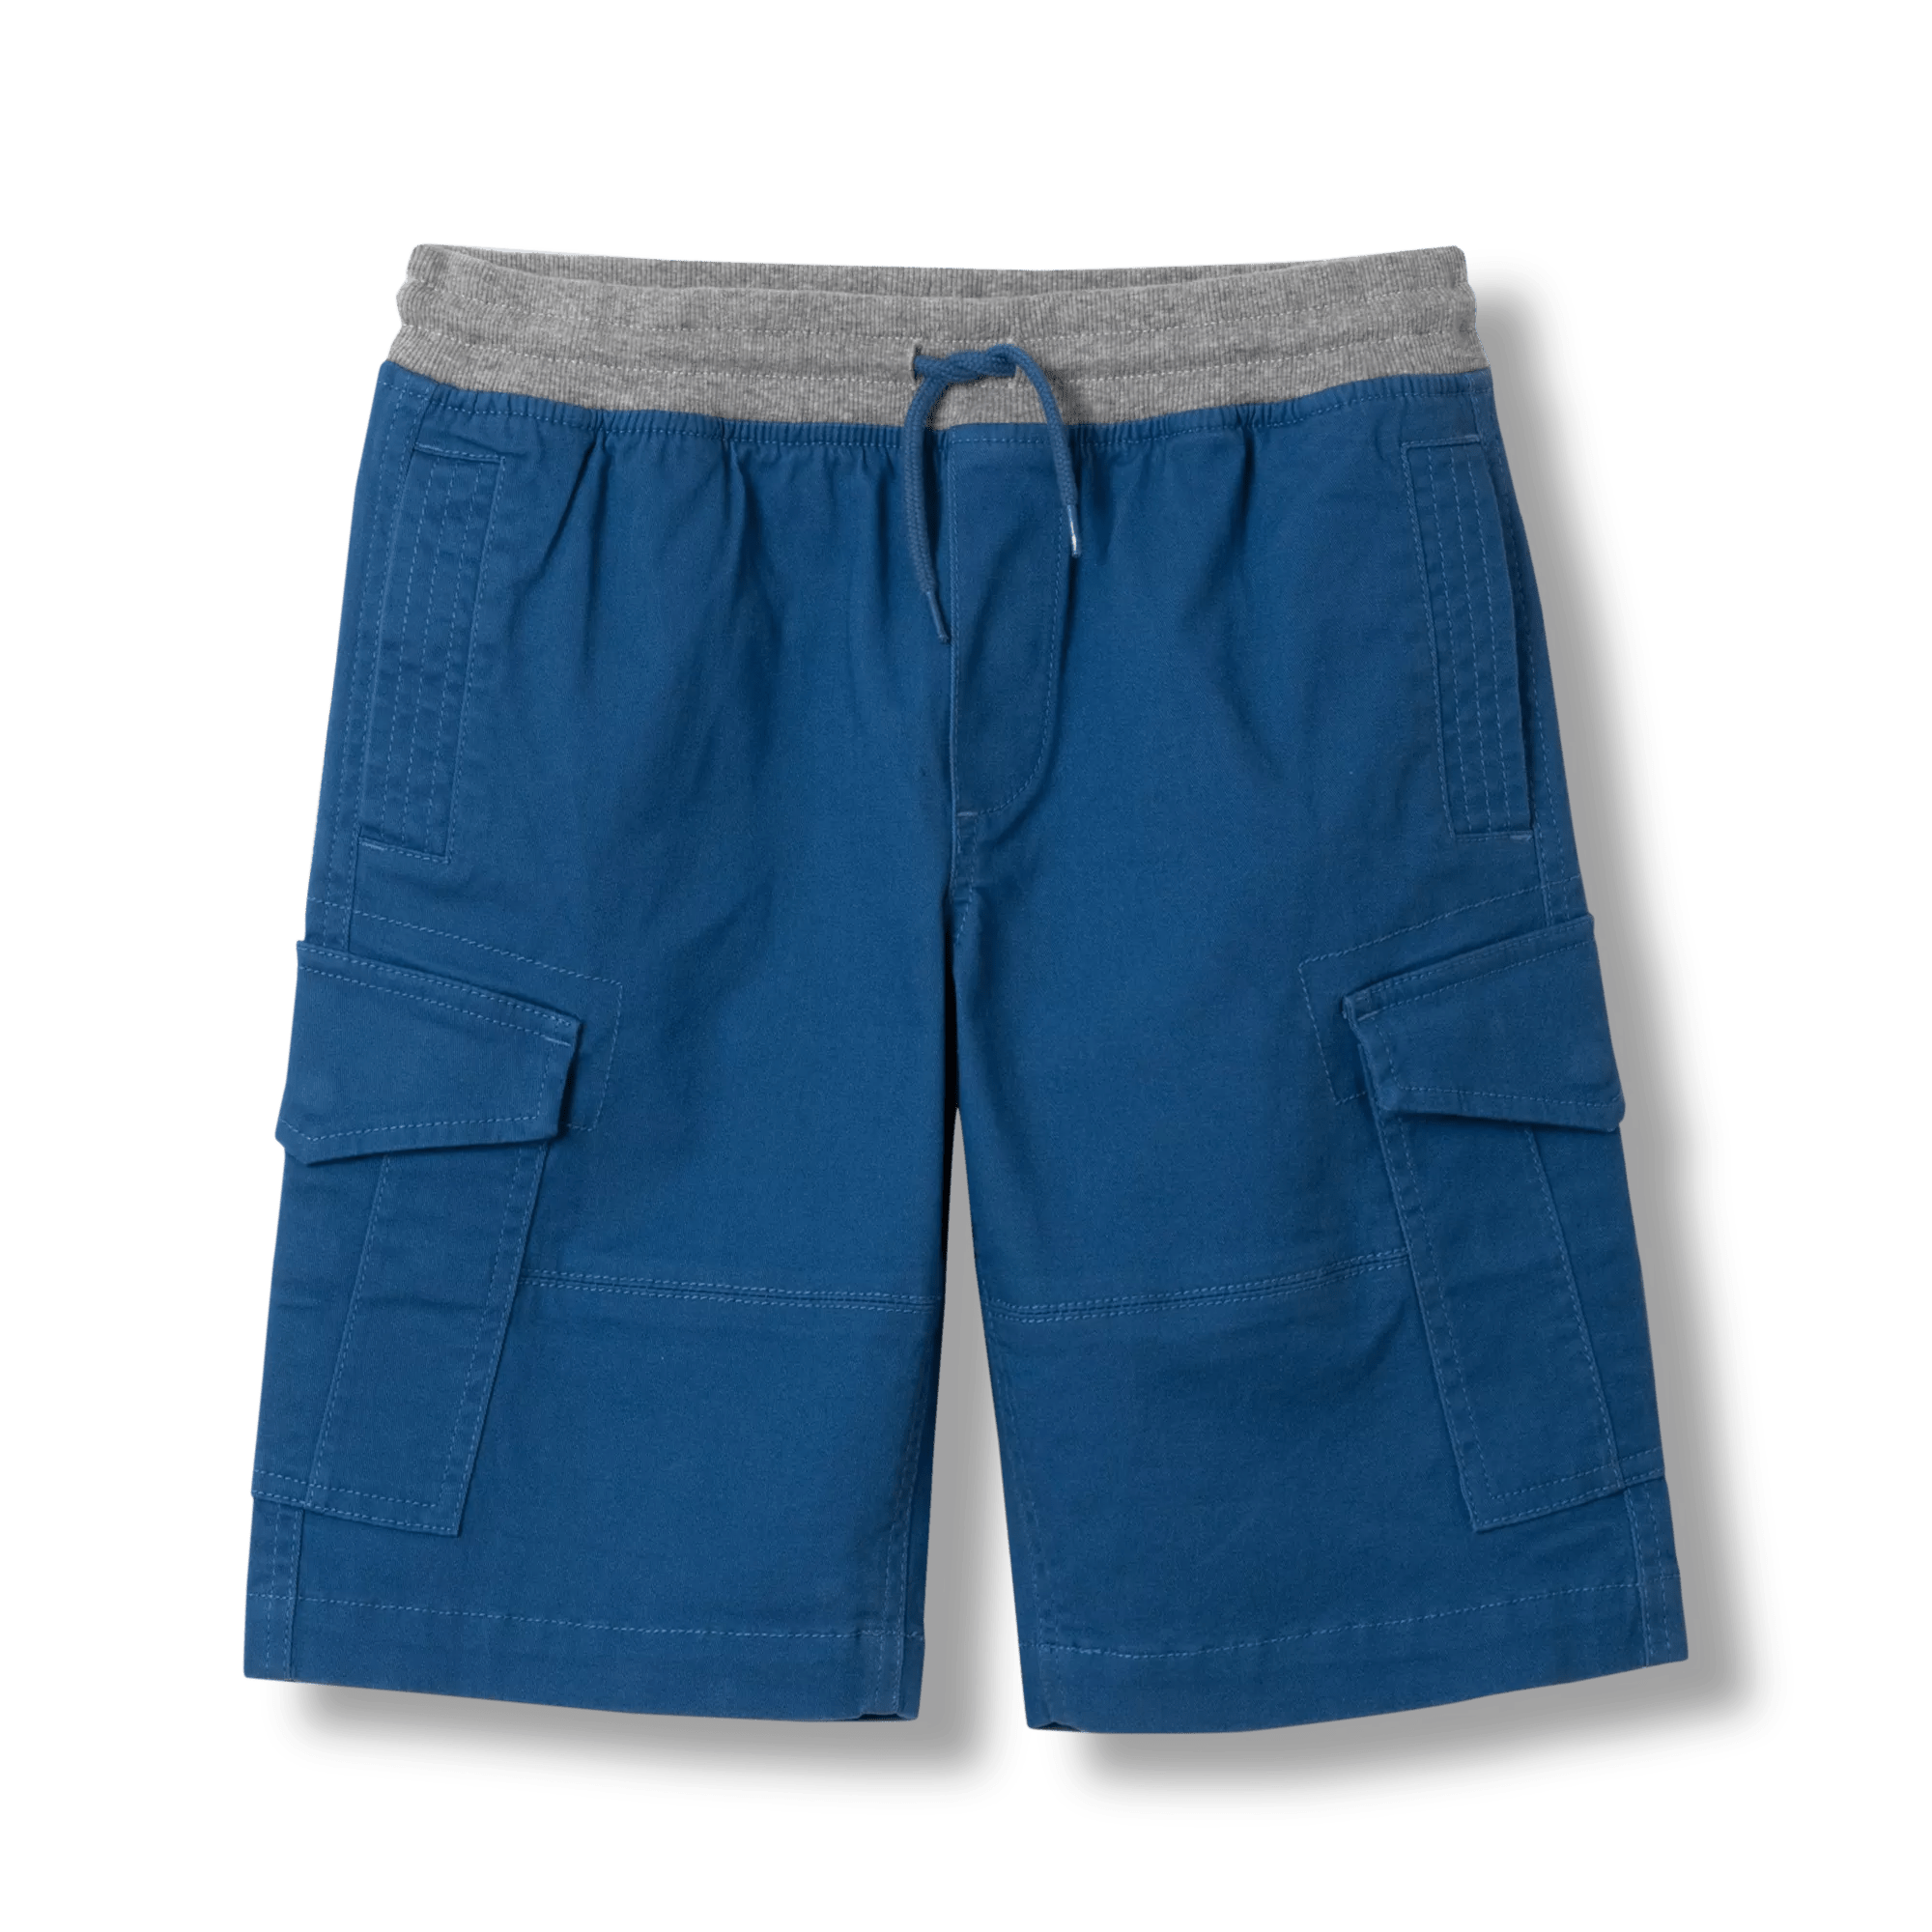 Adventurer® Cargo Shorts